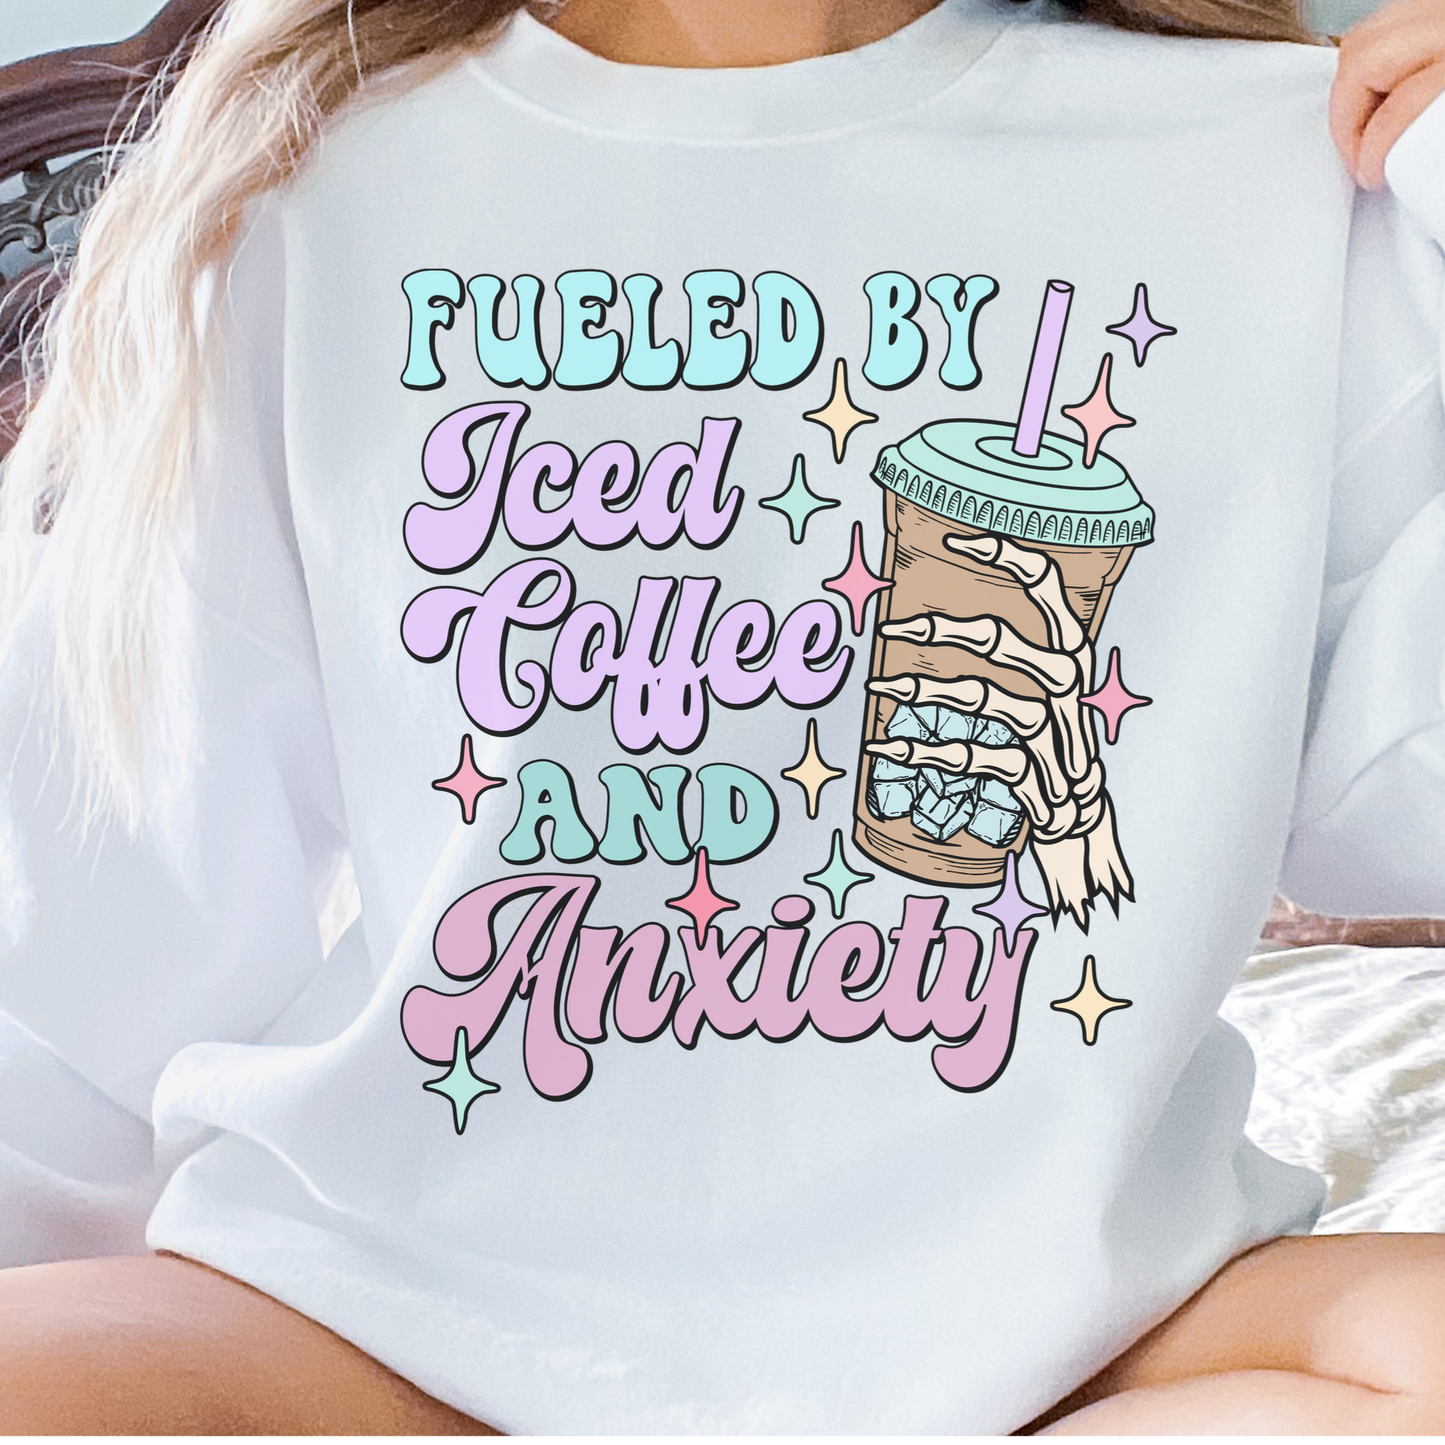 ICED COFFEE + ANXIETY